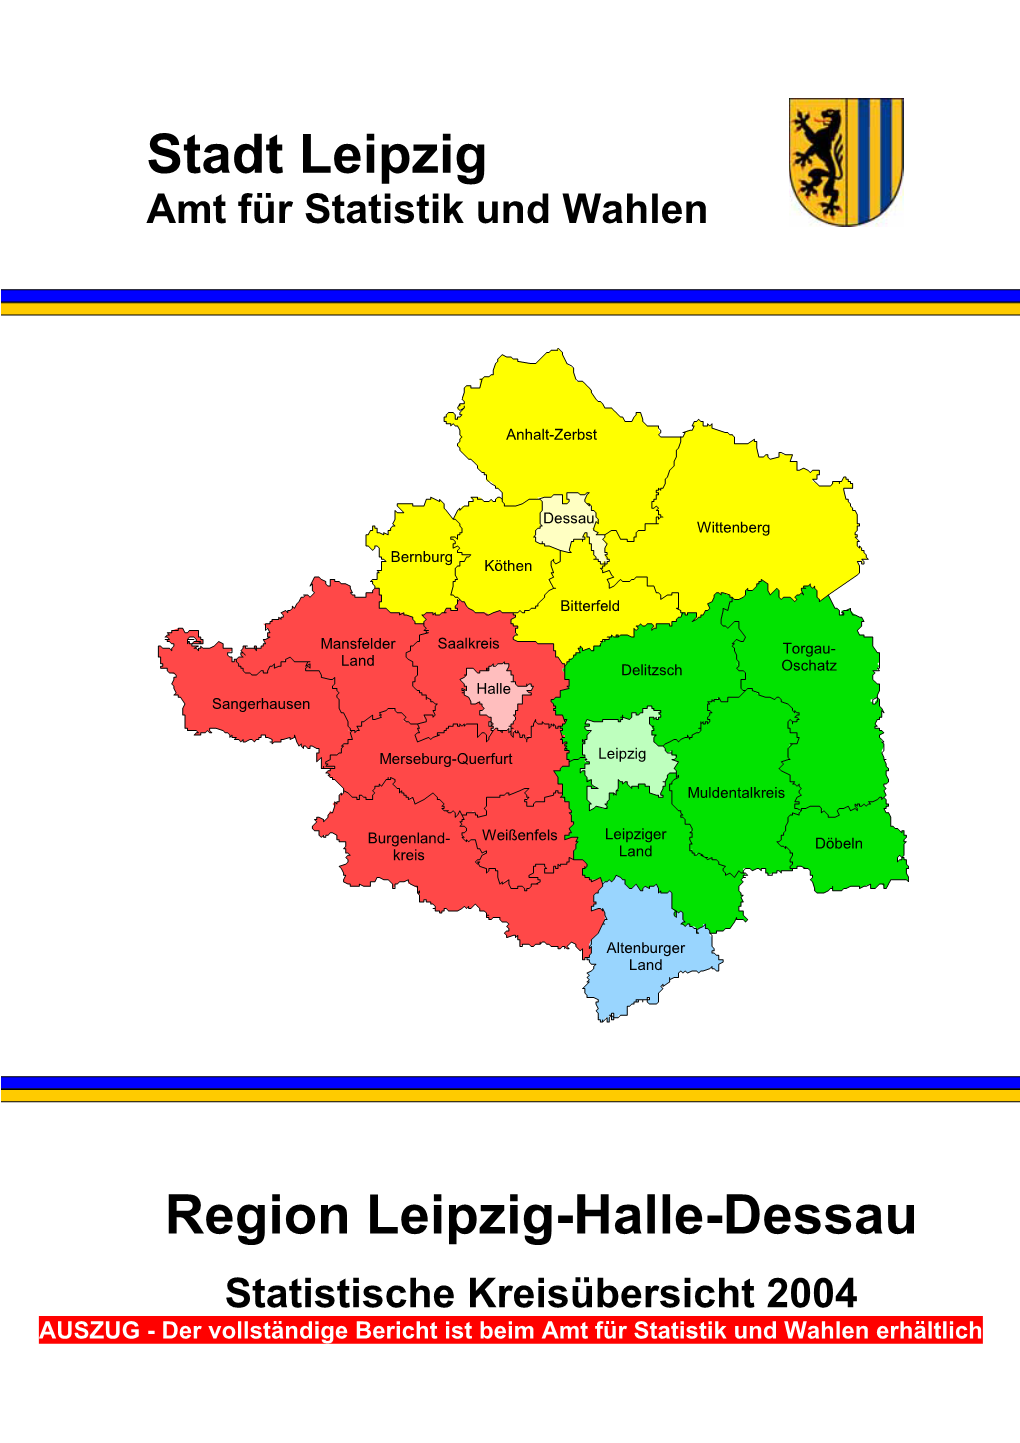 Region Leipzig-Halle-Dessau